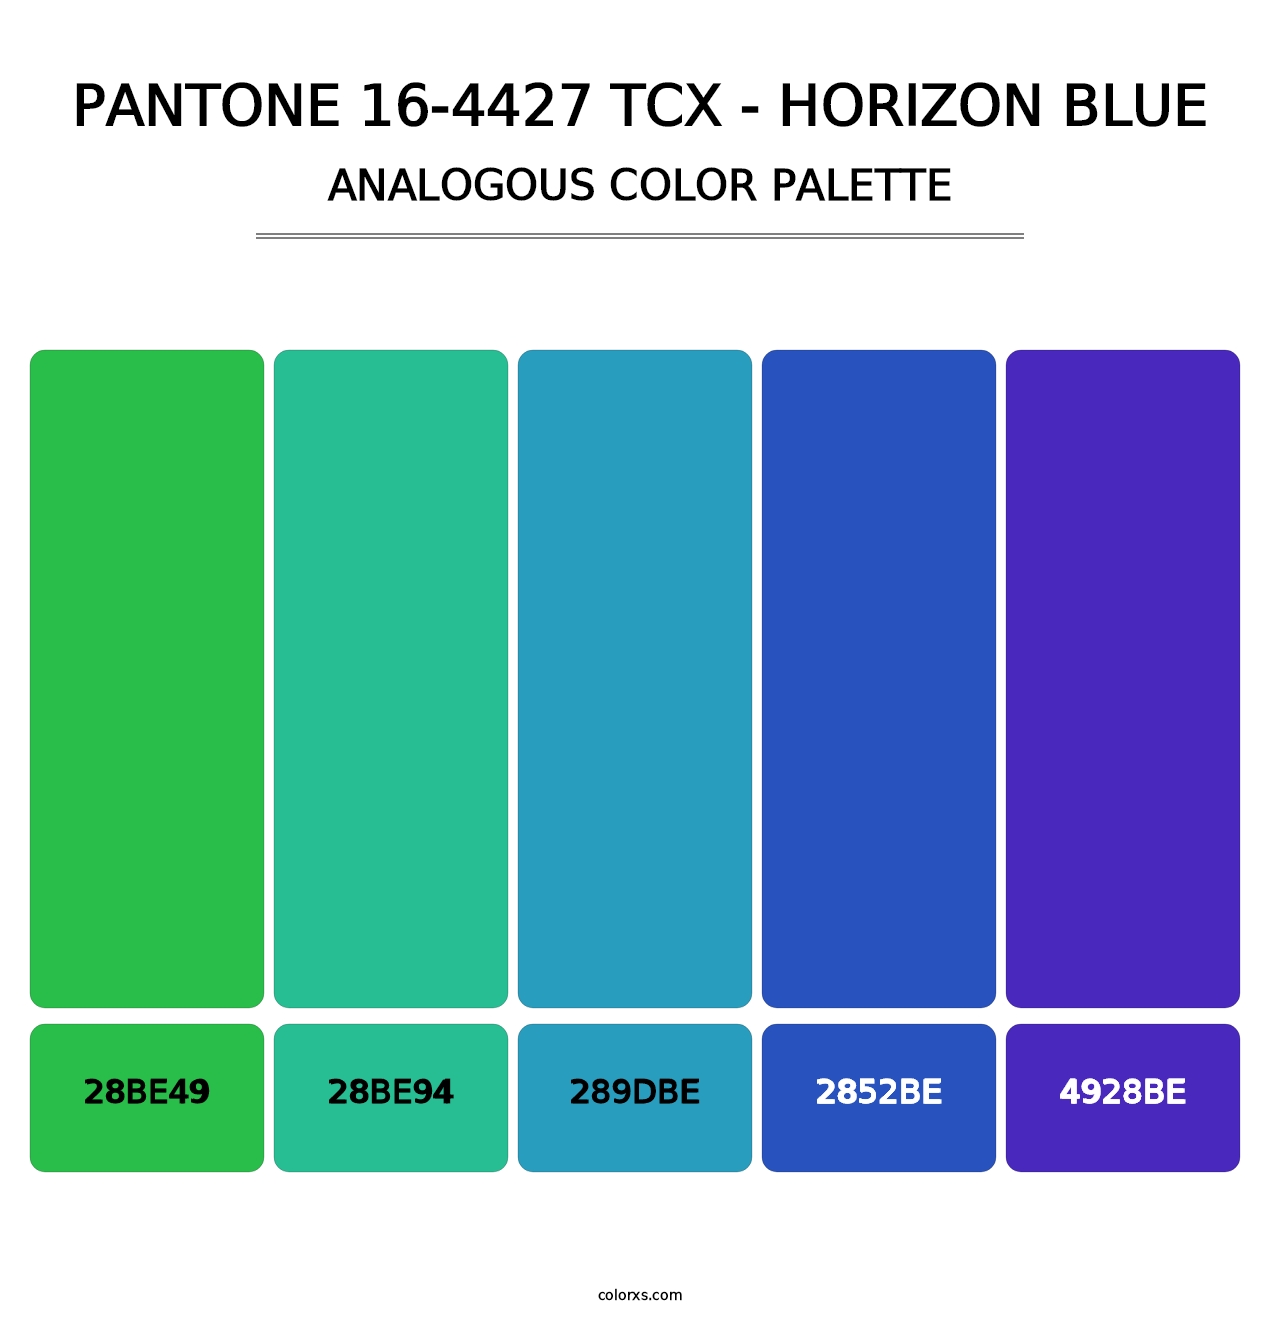 PANTONE 16-4427 TCX - Horizon Blue - Analogous Color Palette